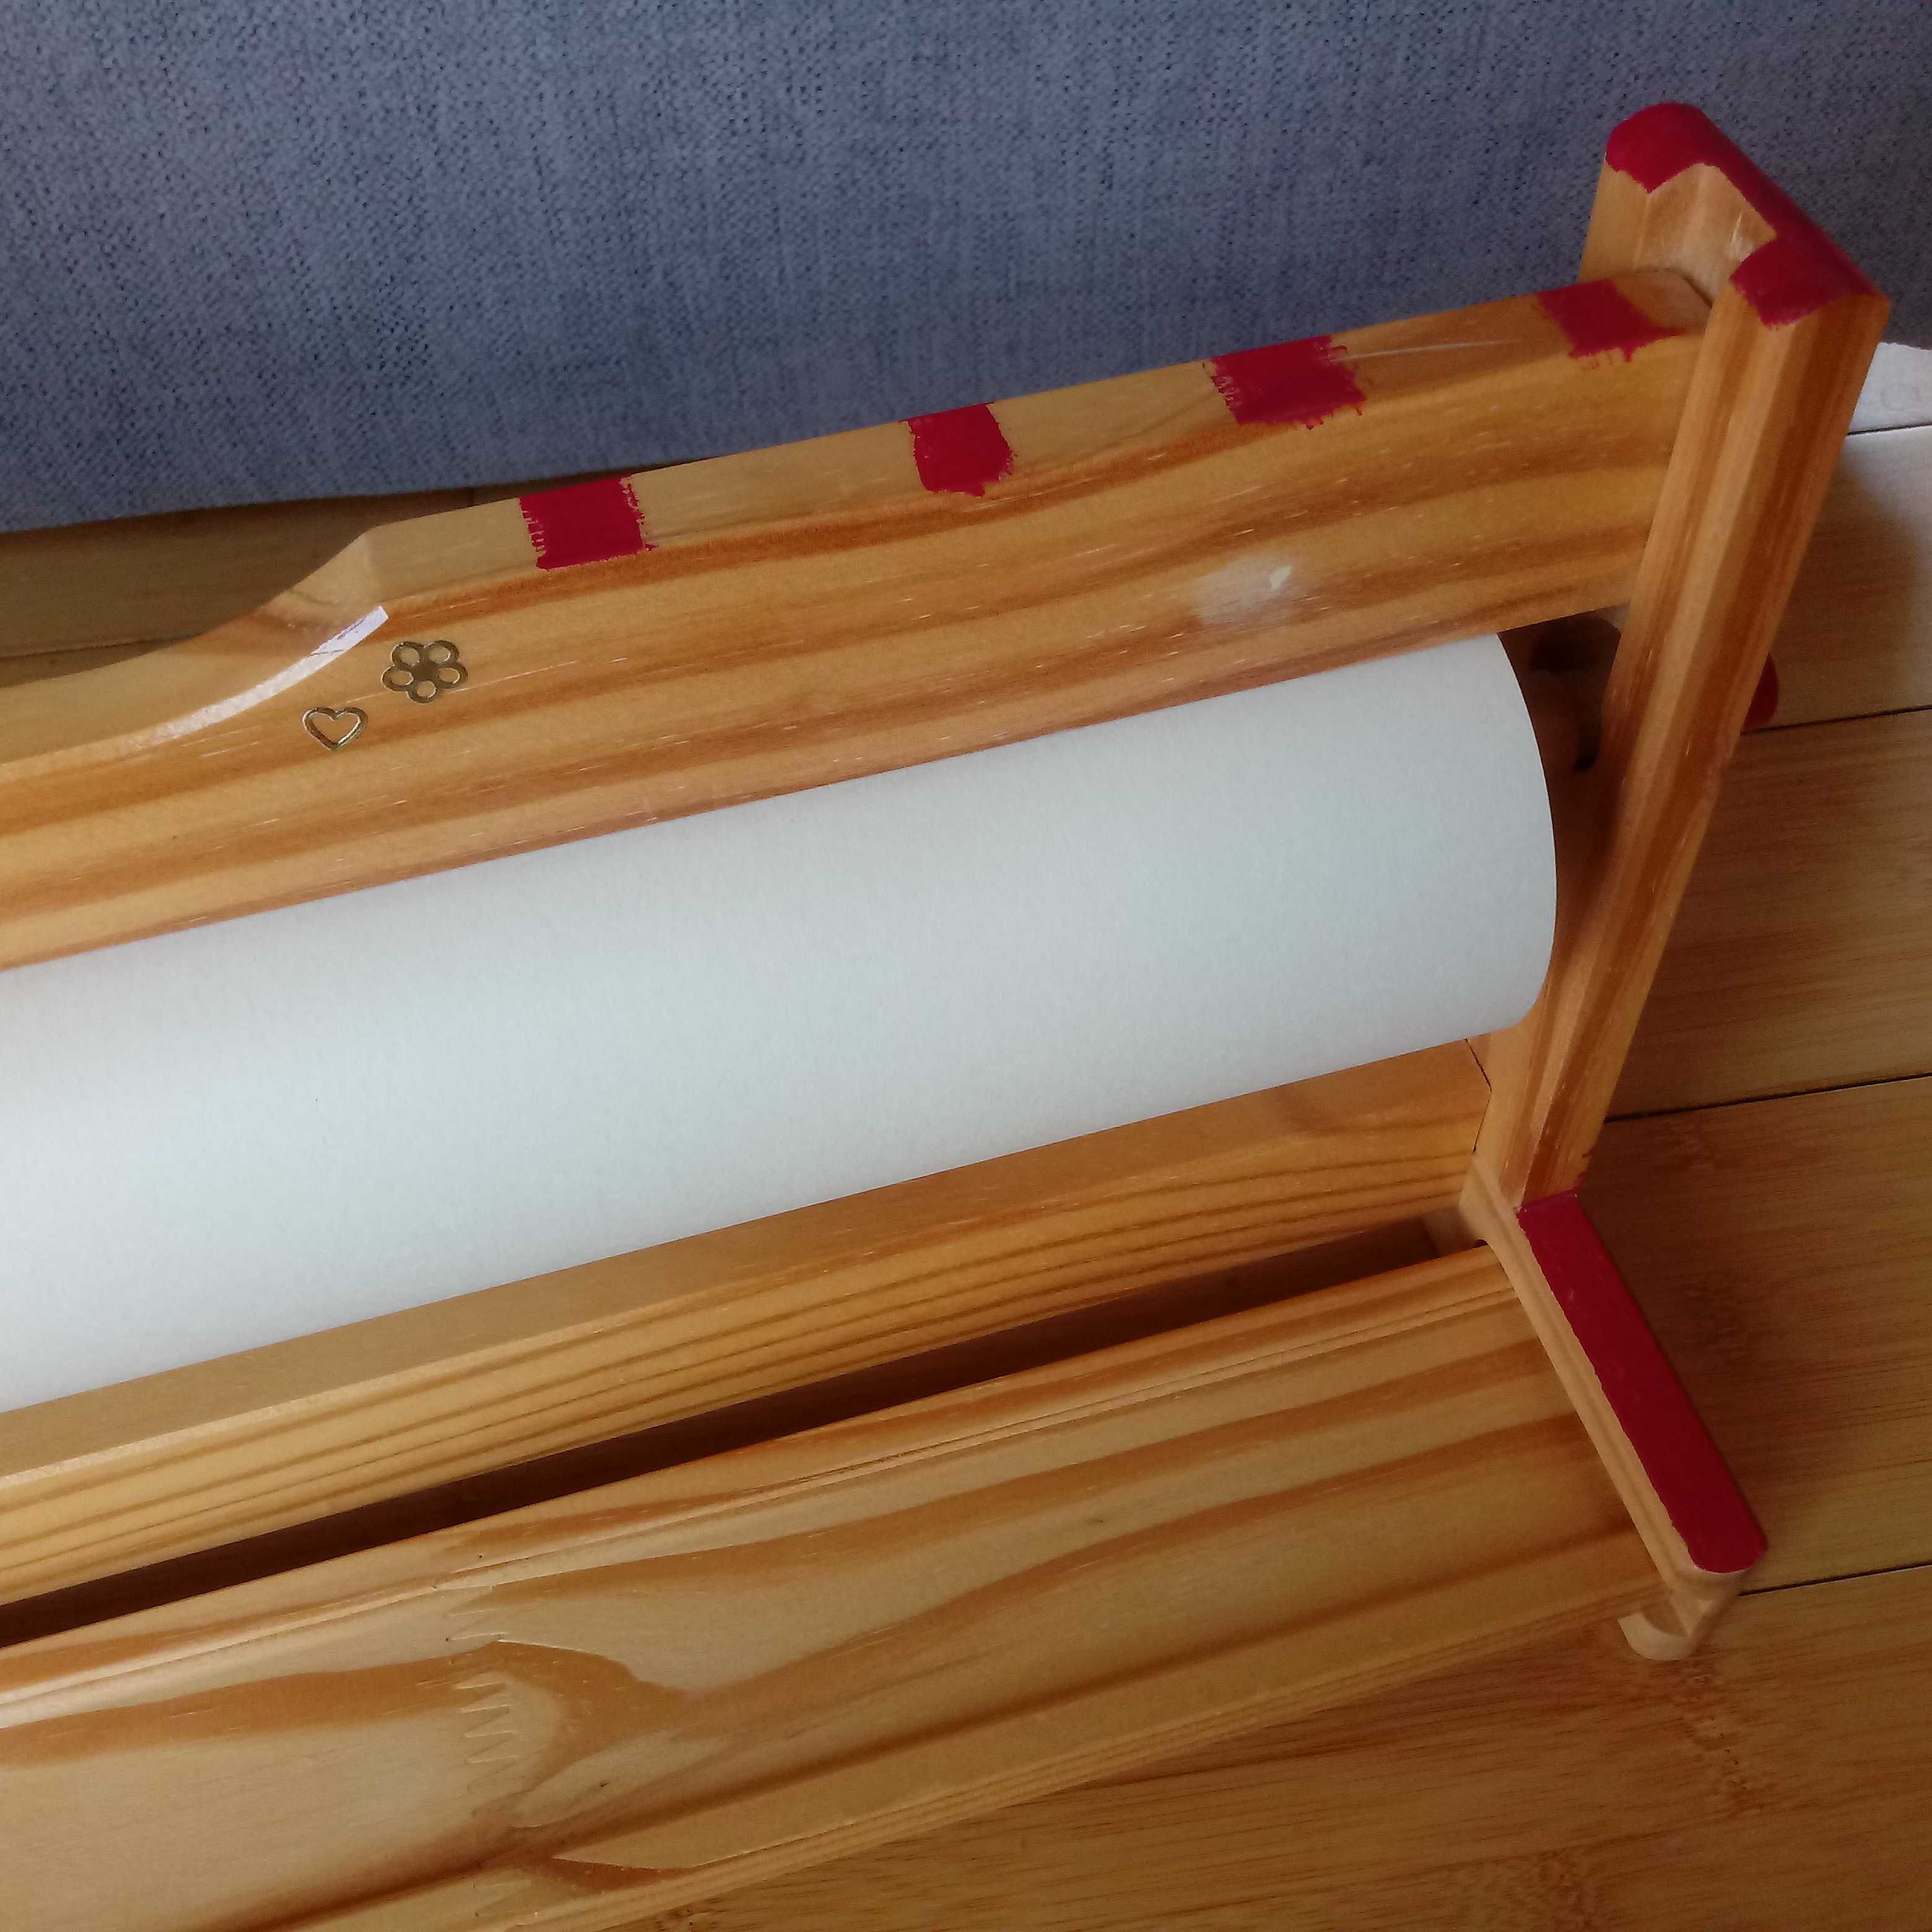 Ikea uchwyt na papier wraz z rolką papieru do rysowania